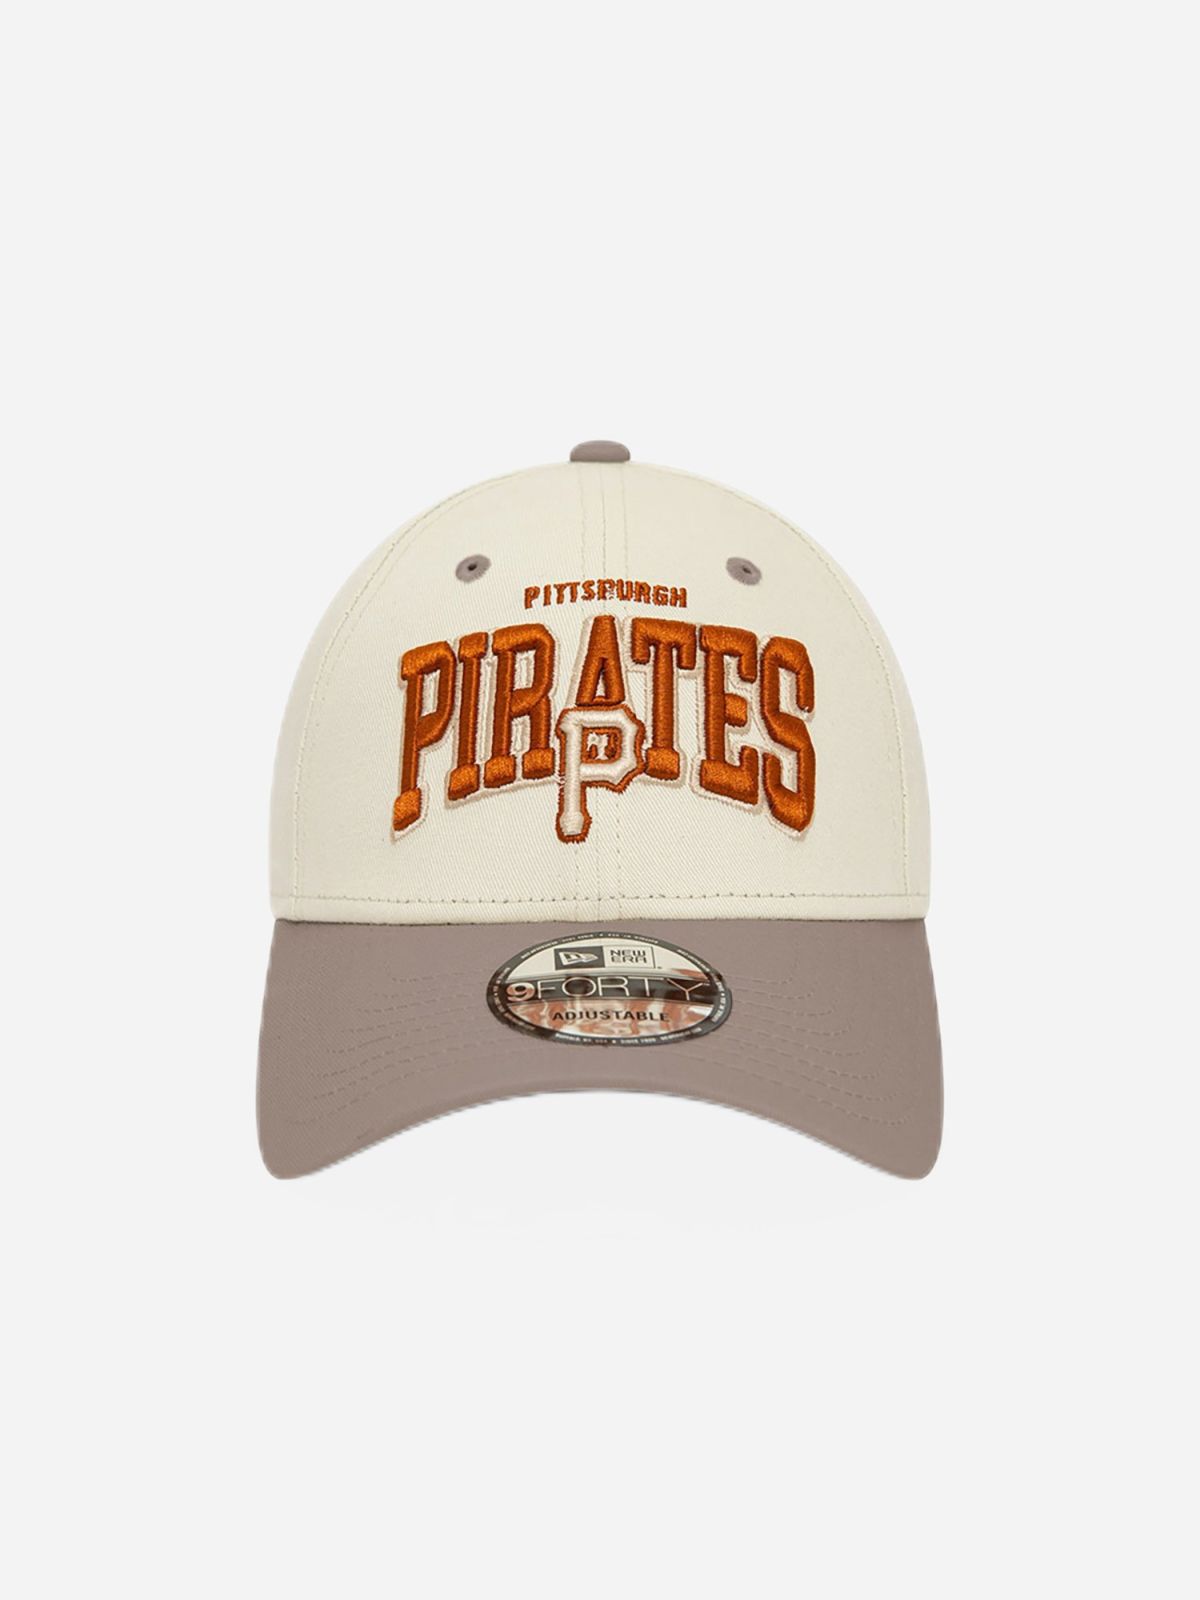  כובע מצחייה עם רקמת לוגו Pittsburgh Pirates / גברים של NEW ERA